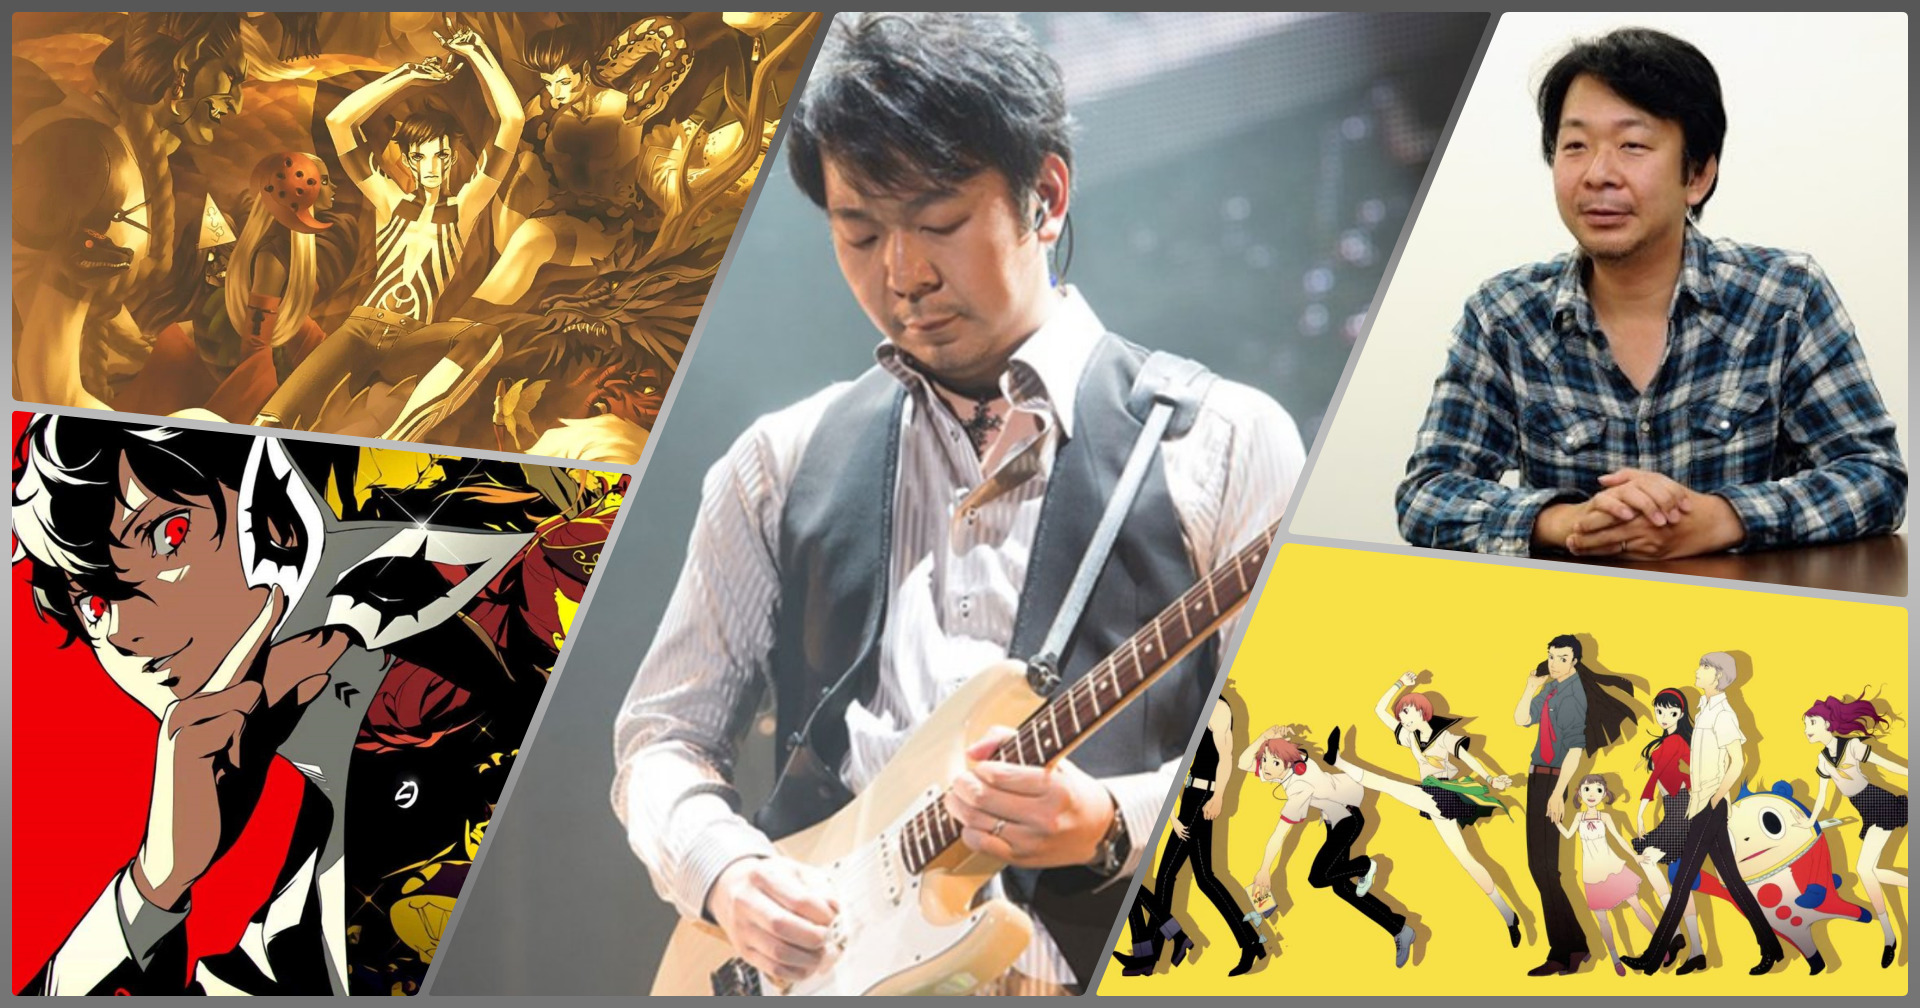 Soundtrack และ Video Game กับผู้ที่อยู่เบื้องหลังบทเพลงที่ยอดเยี่ยม ‘Shoji Meguro’